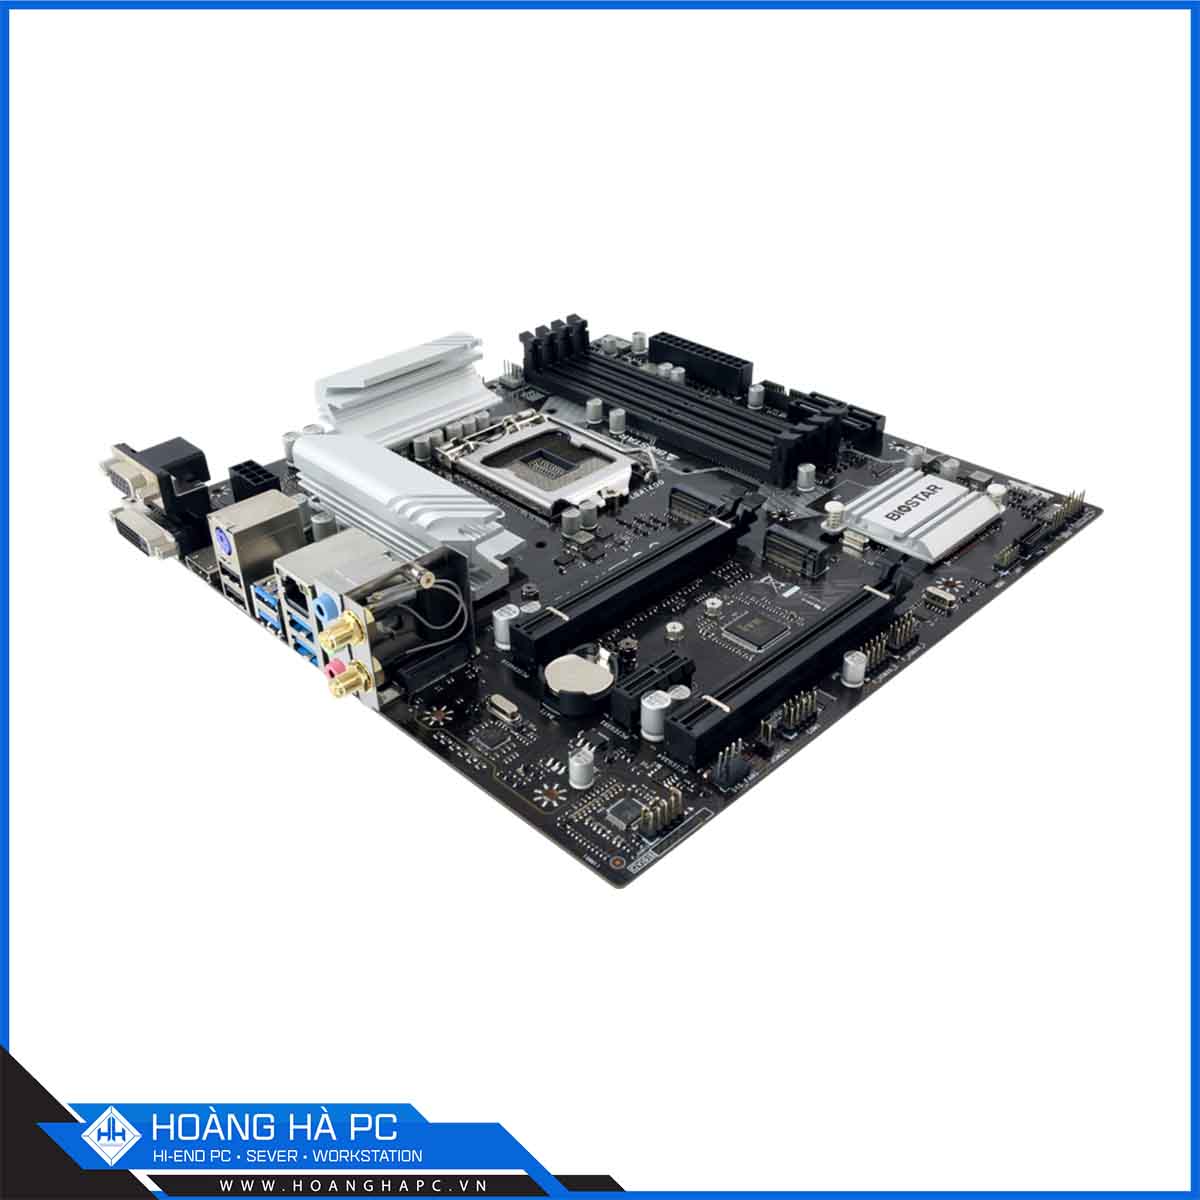 Mainboard Biostar B560MX-E Pro(Intel B560, LGA 1200, mATX, 4 khe Ram DDR4)